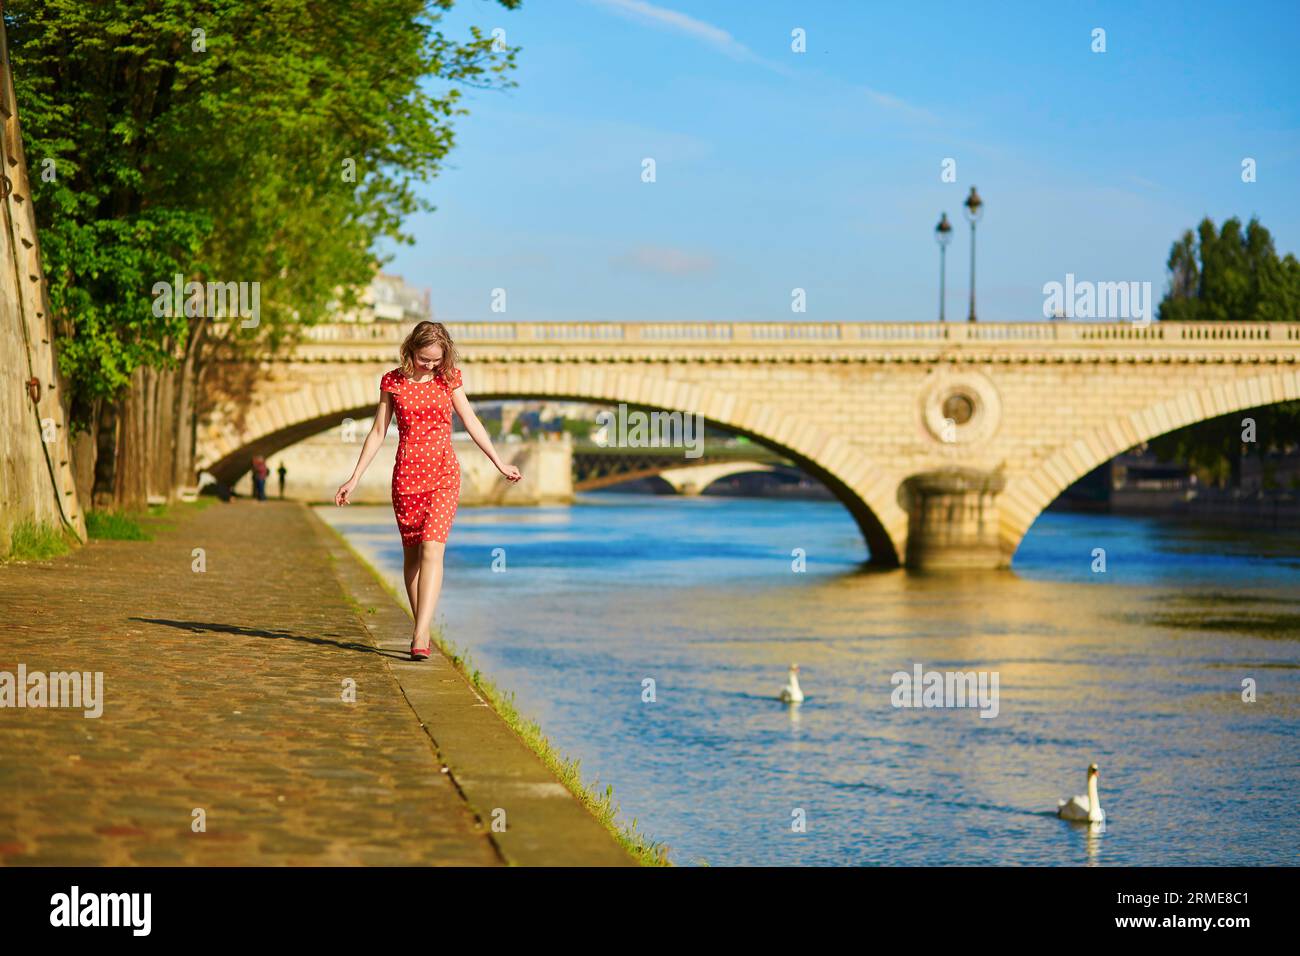 Schöne junge Frau in rotem Polka-Dot-Kleid in der Nähe der seine an einem schönen Sommertag Stockfoto